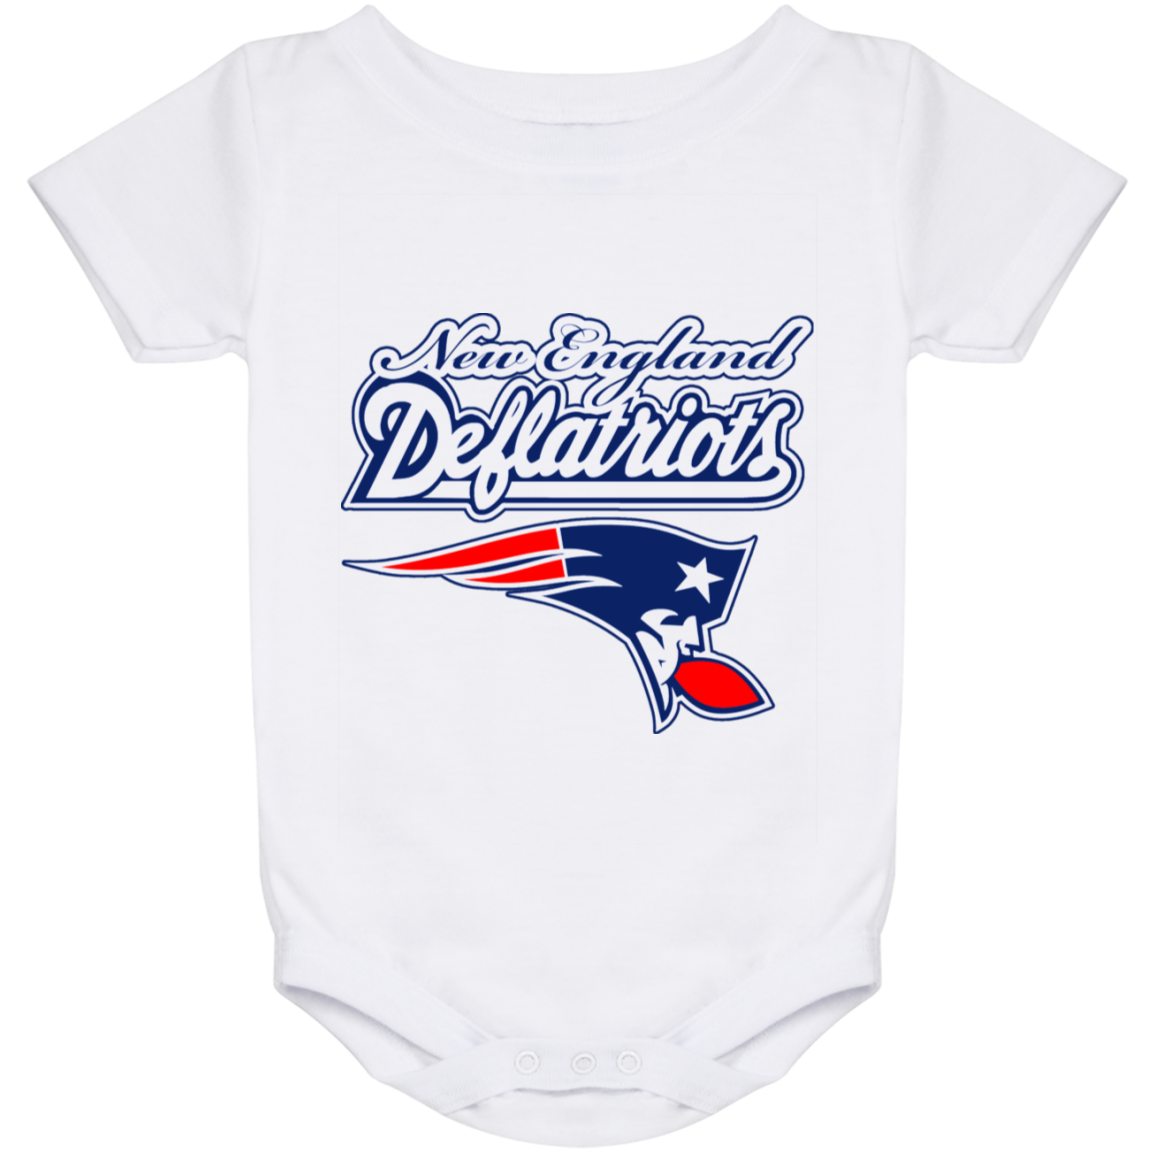 ArtichokeUSA Custom Design. New England Deflatriots. New England Patriots Parody. Baby Onesie 24 Month